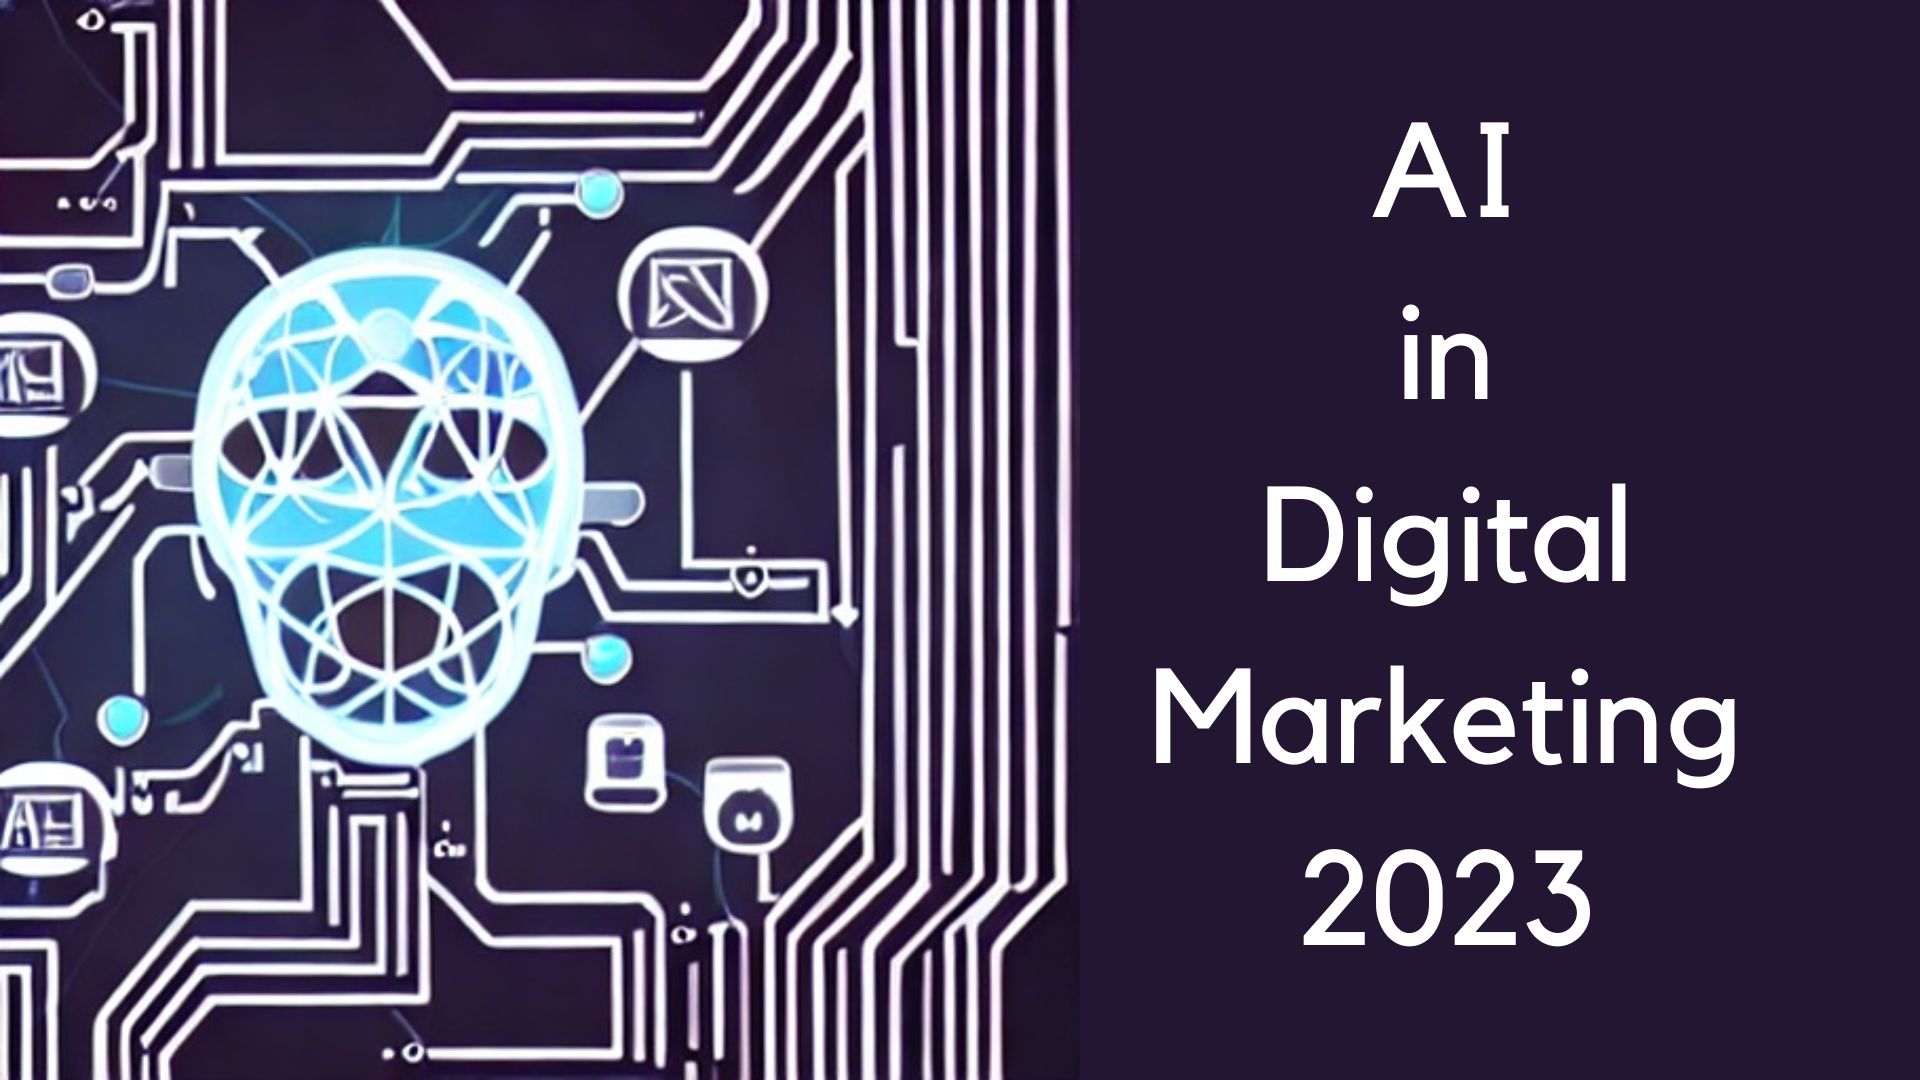 AI in Digital Marketing 2023